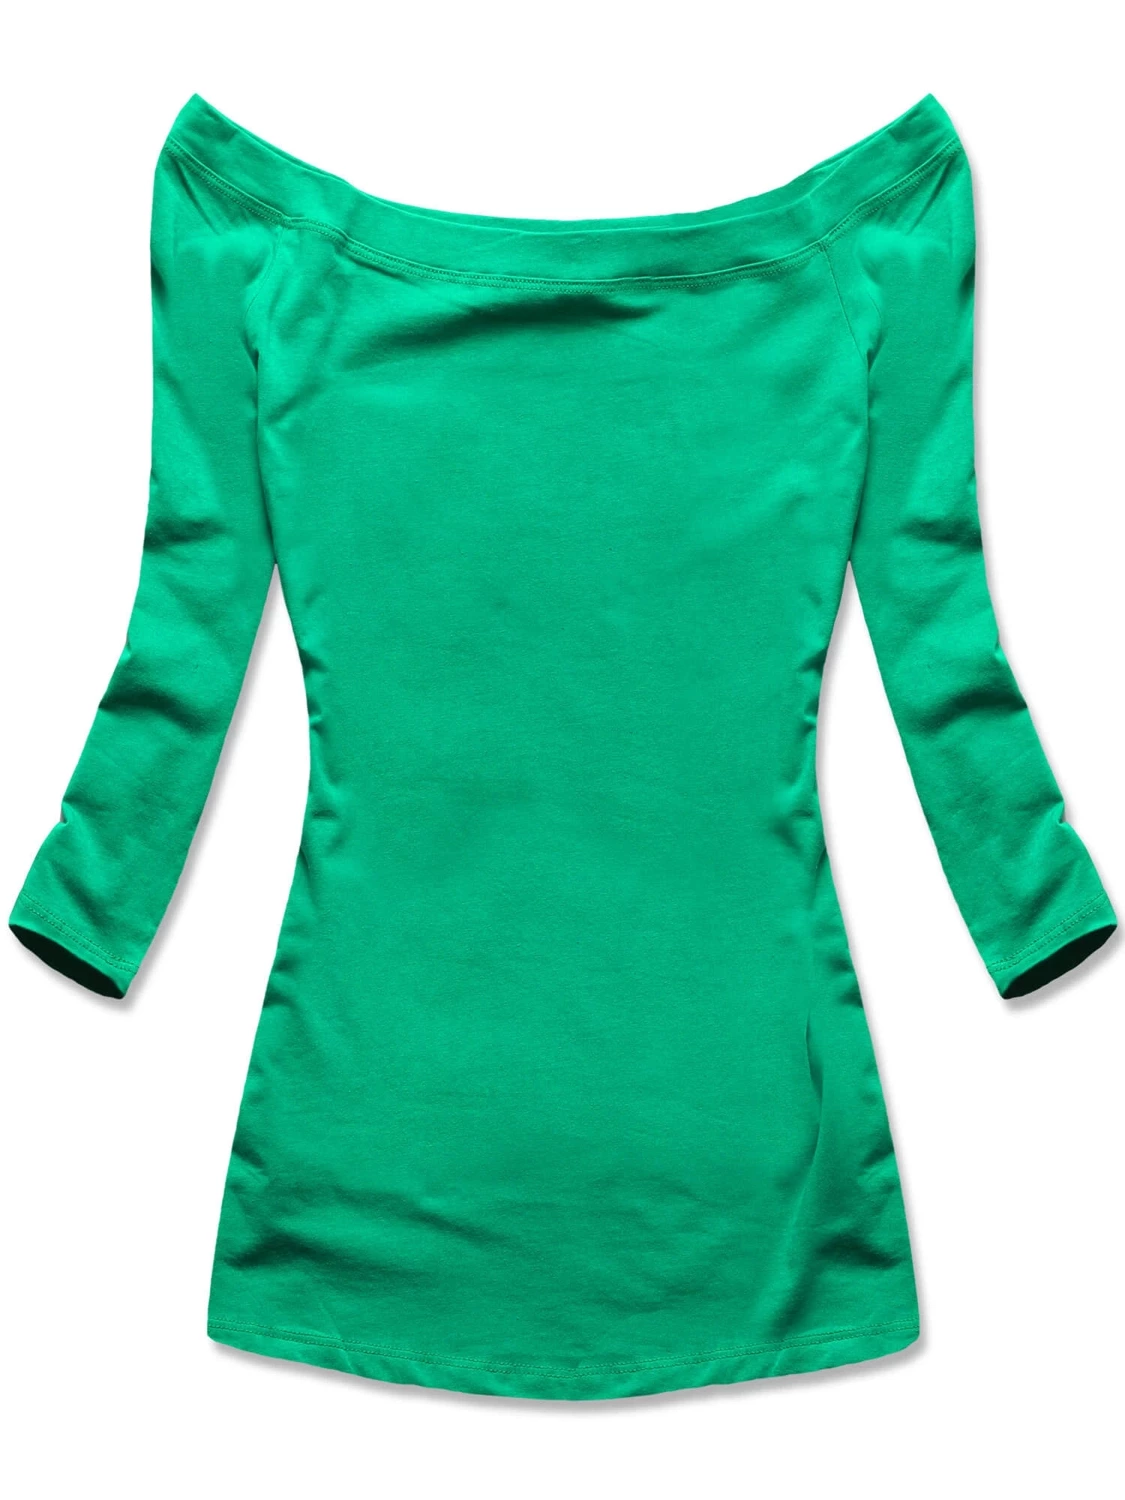 Zielona klasyczna bluzka z dekoltem w łódkę, elegancka i elastyczna